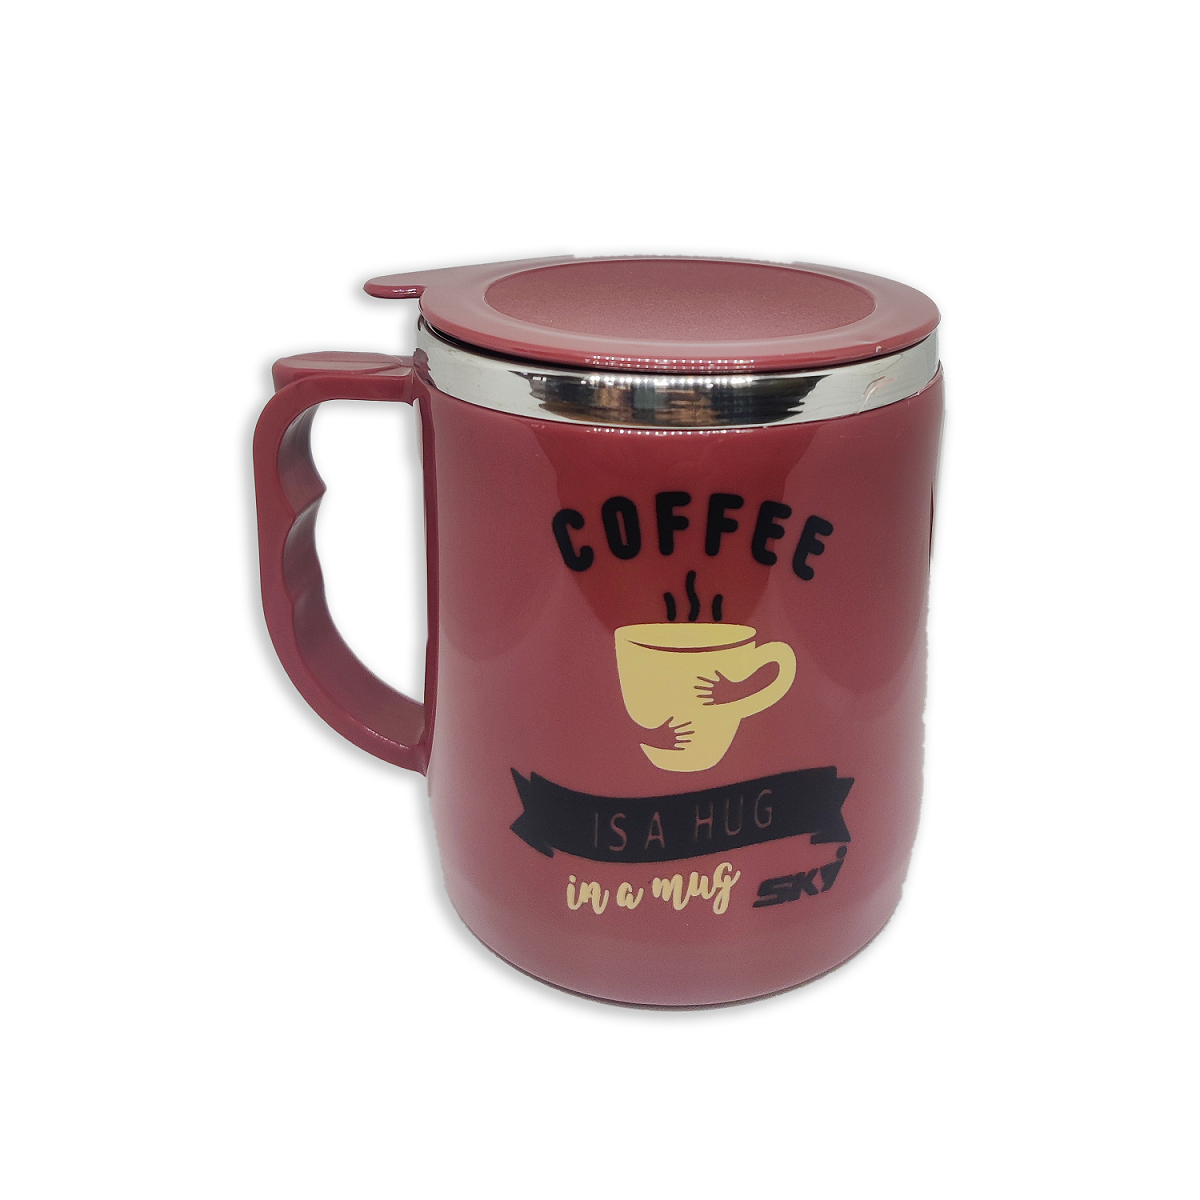 Jolly Steel Big Maroon Coffee Mug